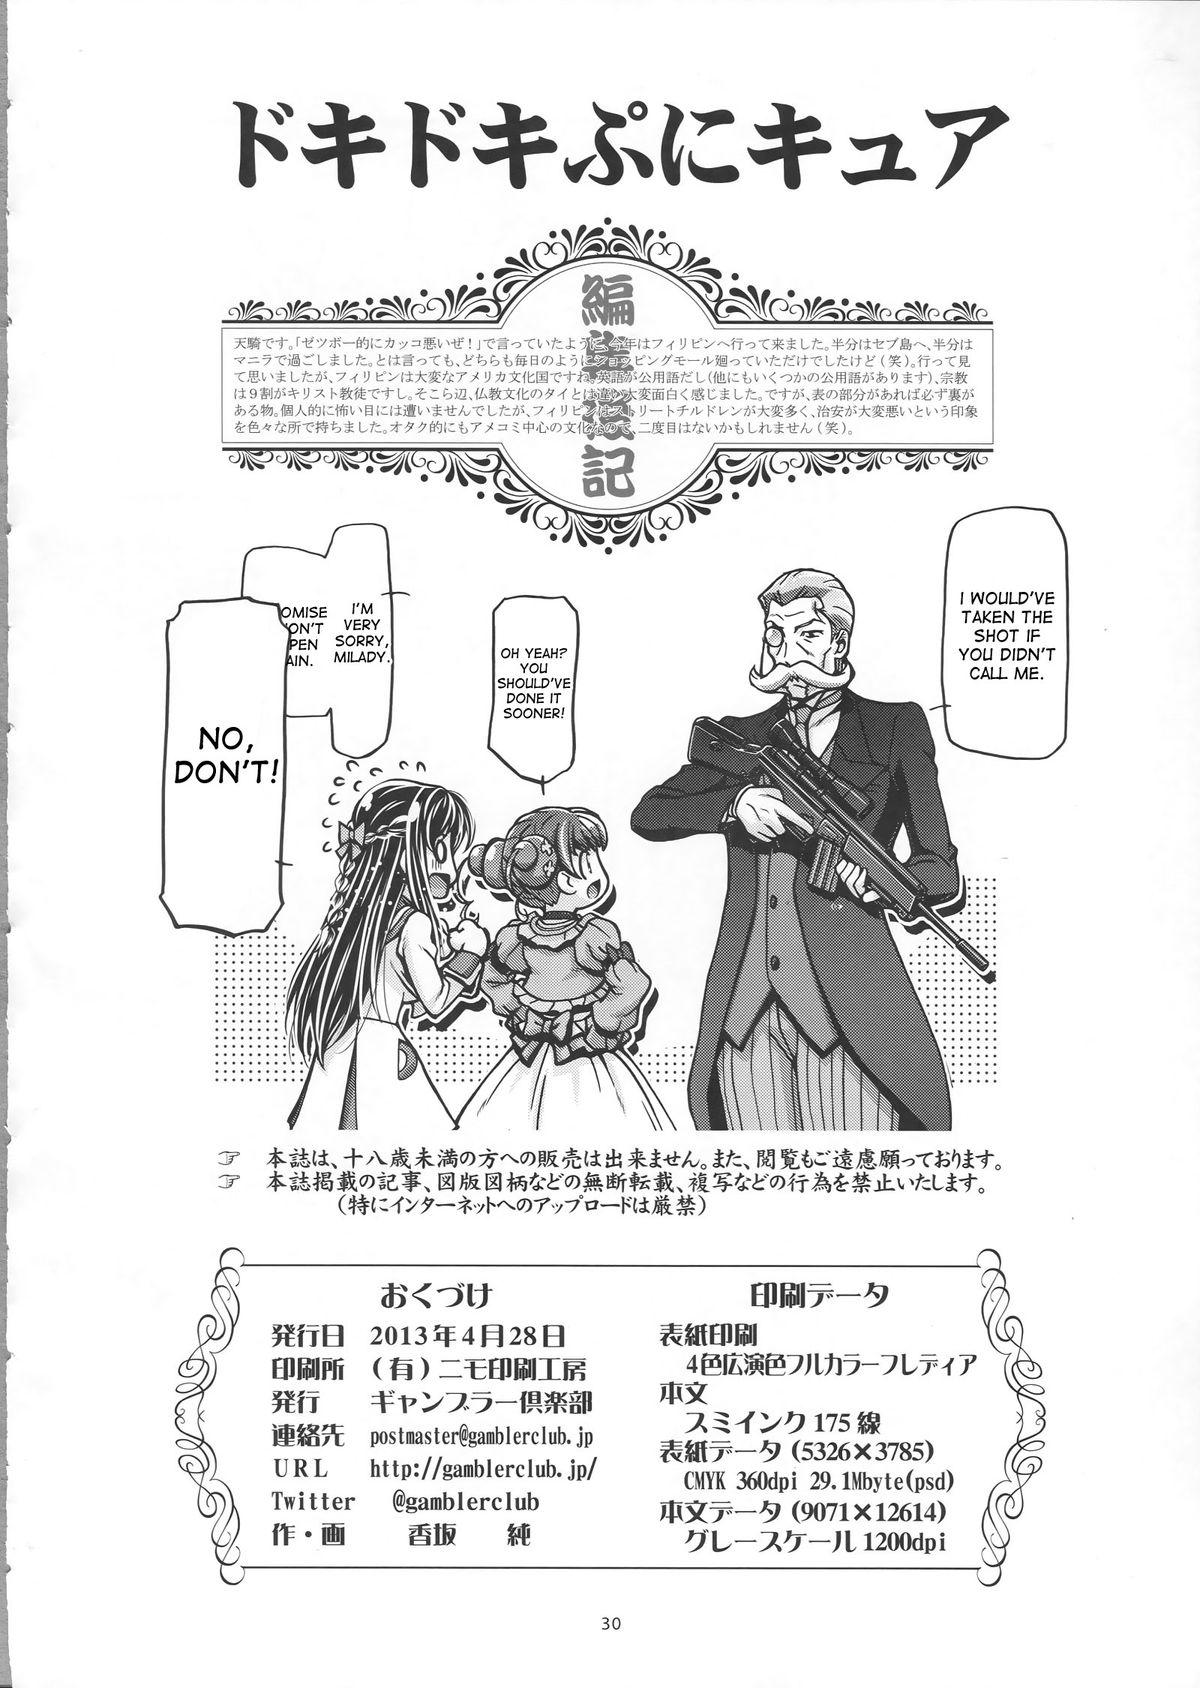 Upskirt DokiDoki Punicure - Pretty cure Dokidoki precure Tites - Page 29